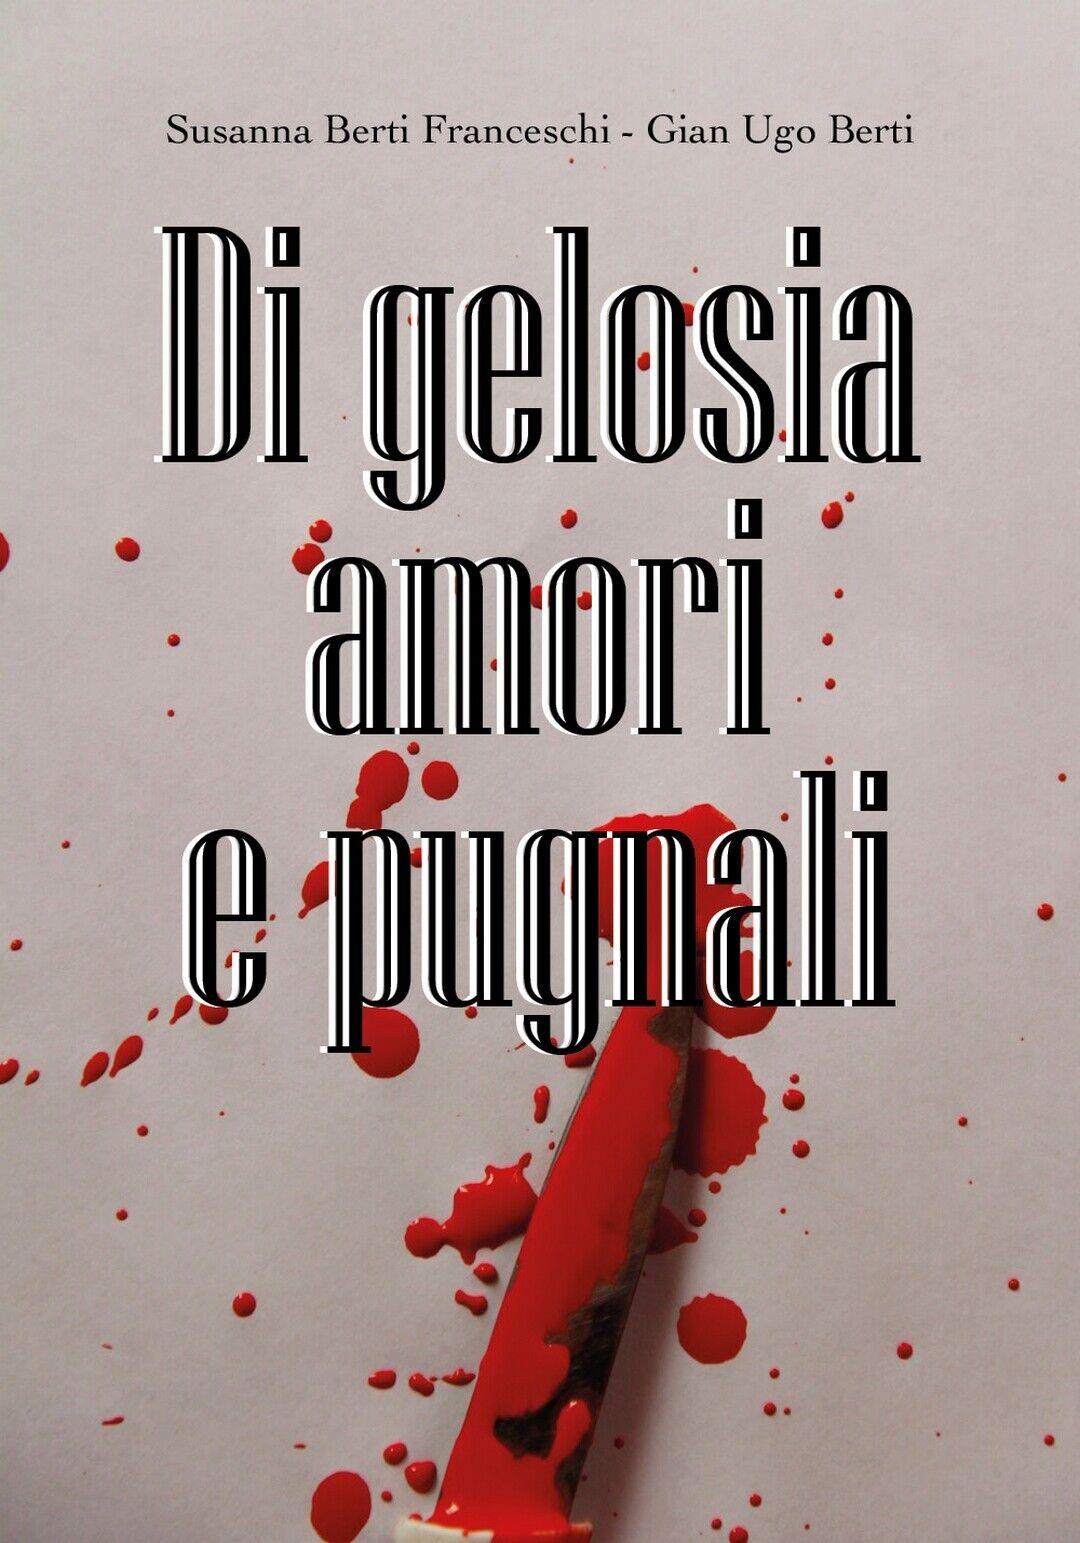 Di gelosia amori e pugnali - di Susanna Berti Franceschi, Gian Ugo Berti,  2019